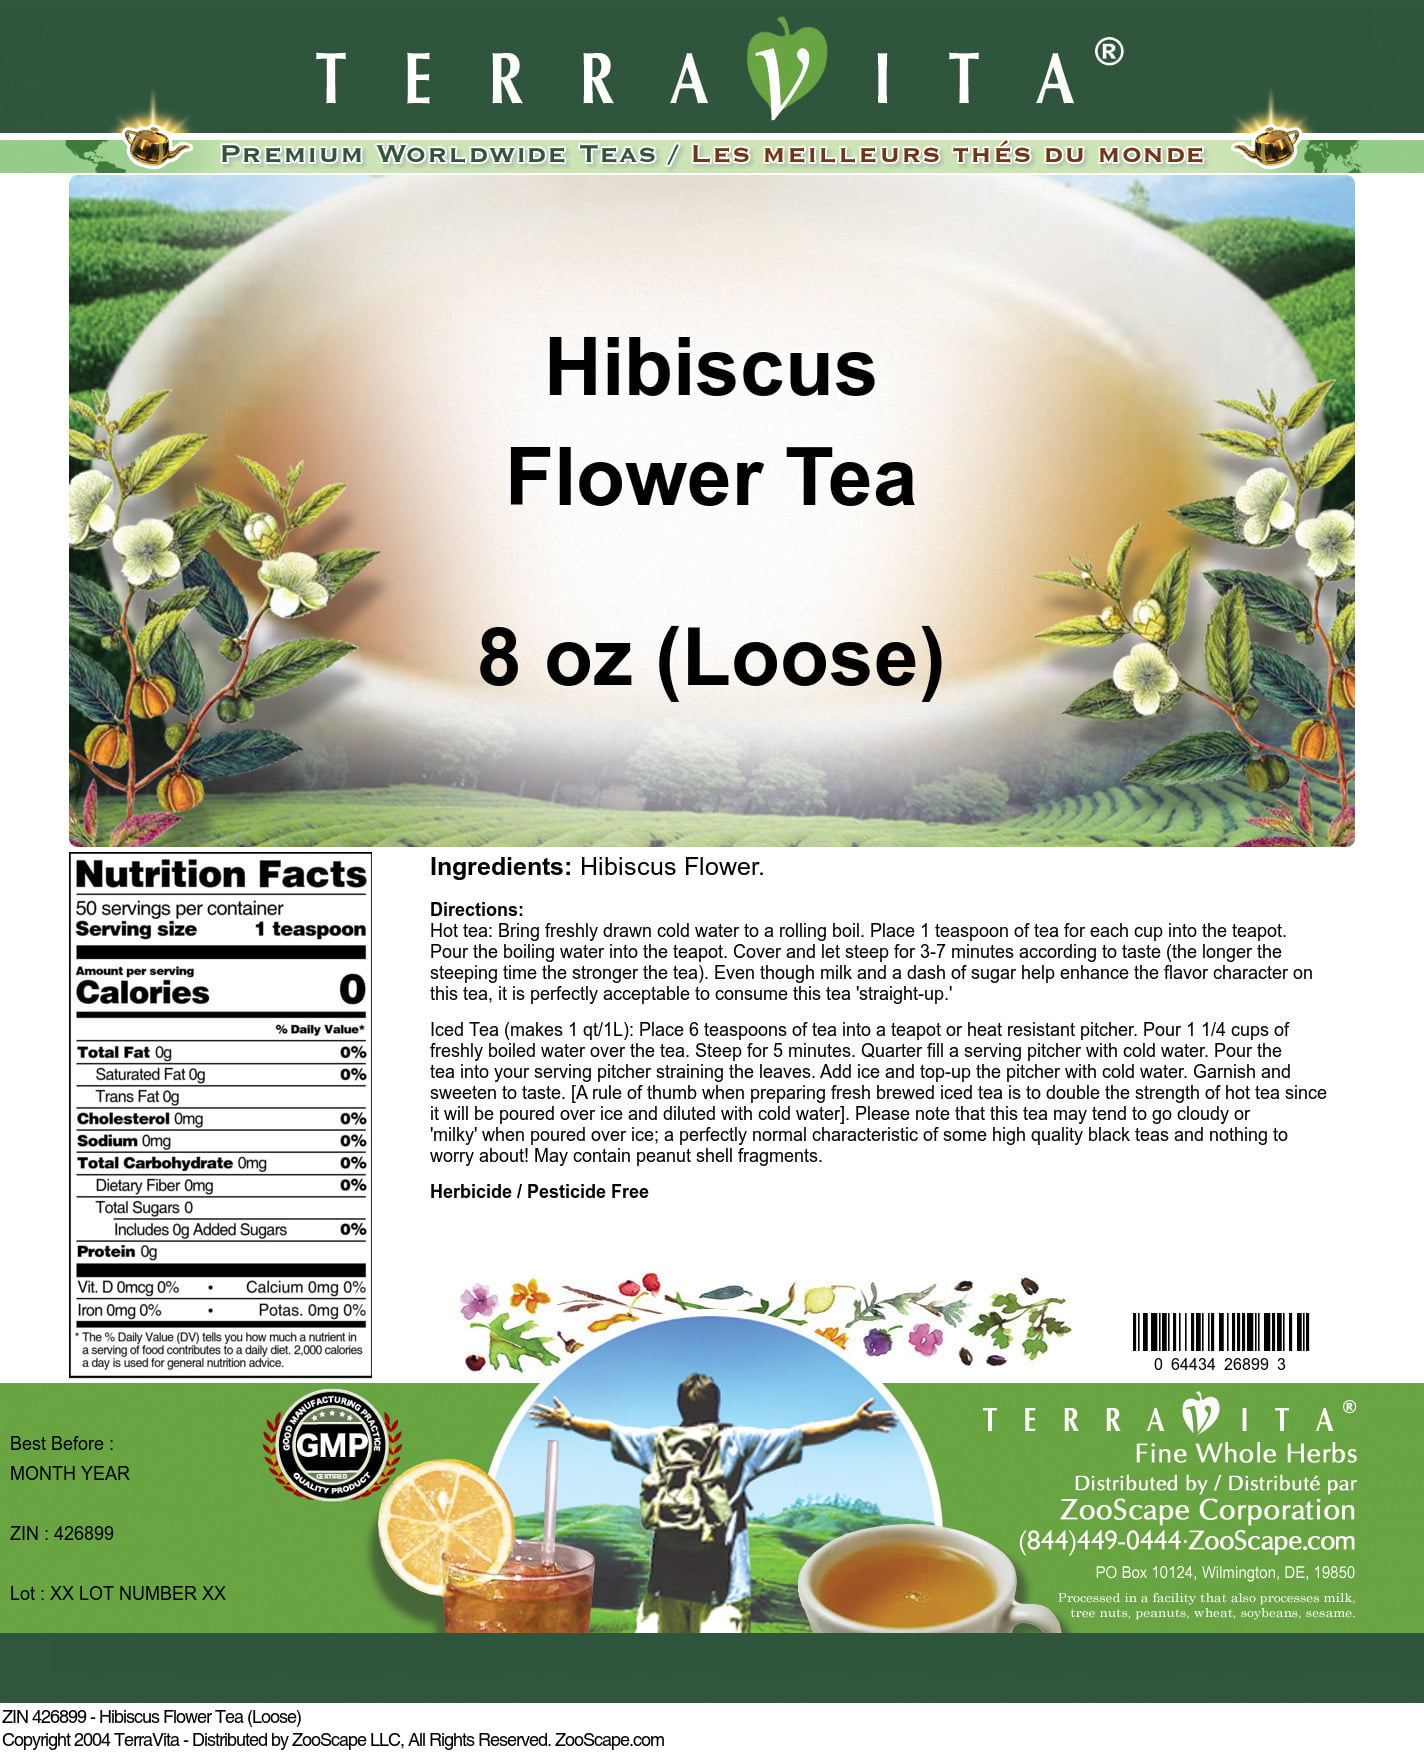 8 Benefits of Hibiscus